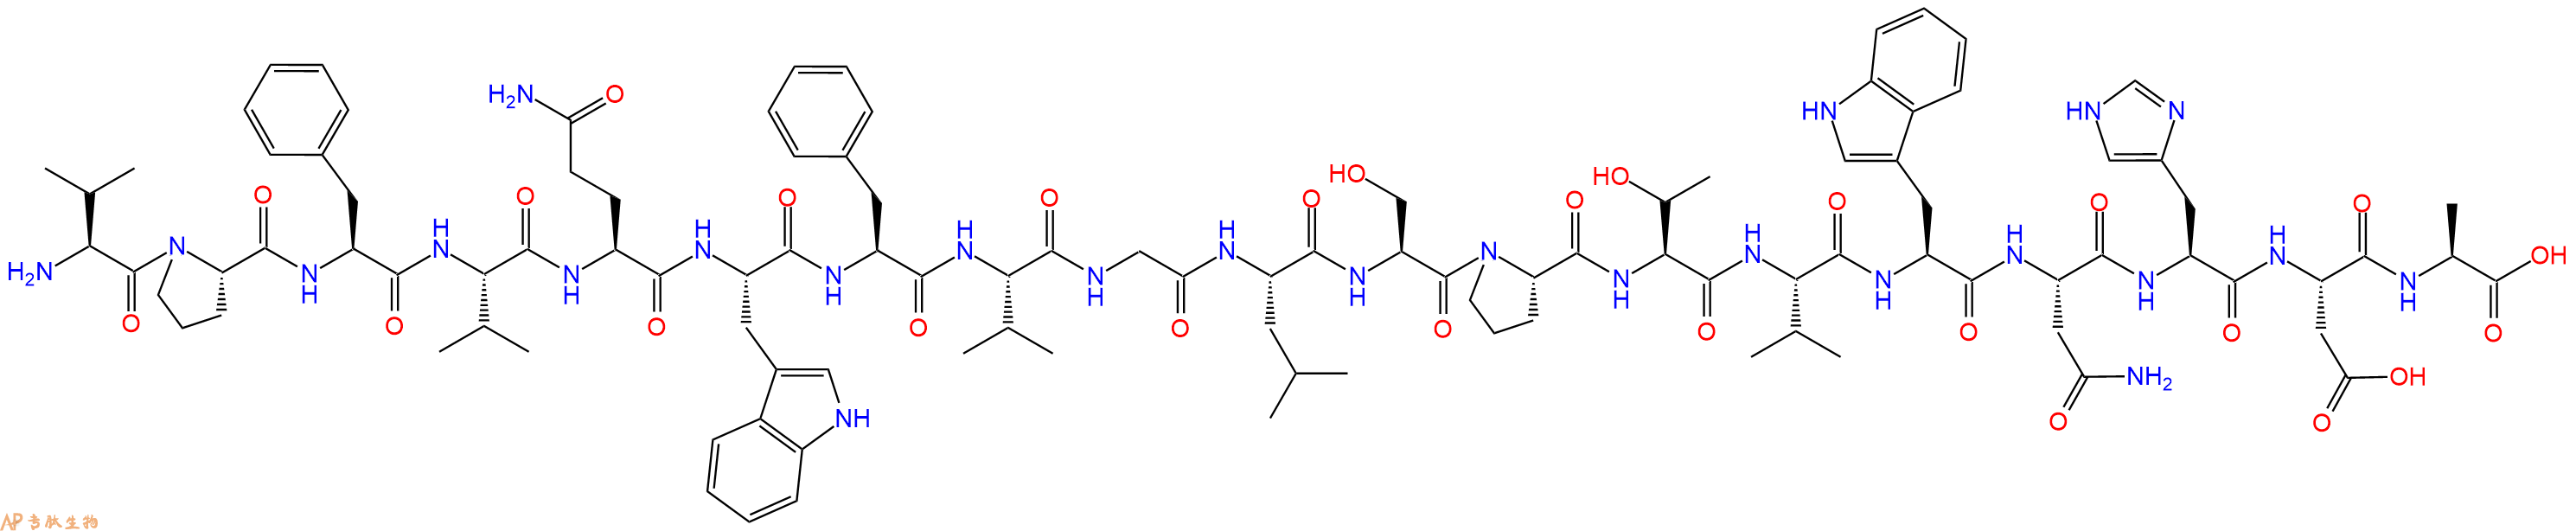 专肽生物产品H2N-Val-Pro-Phe-Val-Gln-Trp-Phe-Val-Gly-Leu-Ser-Pr